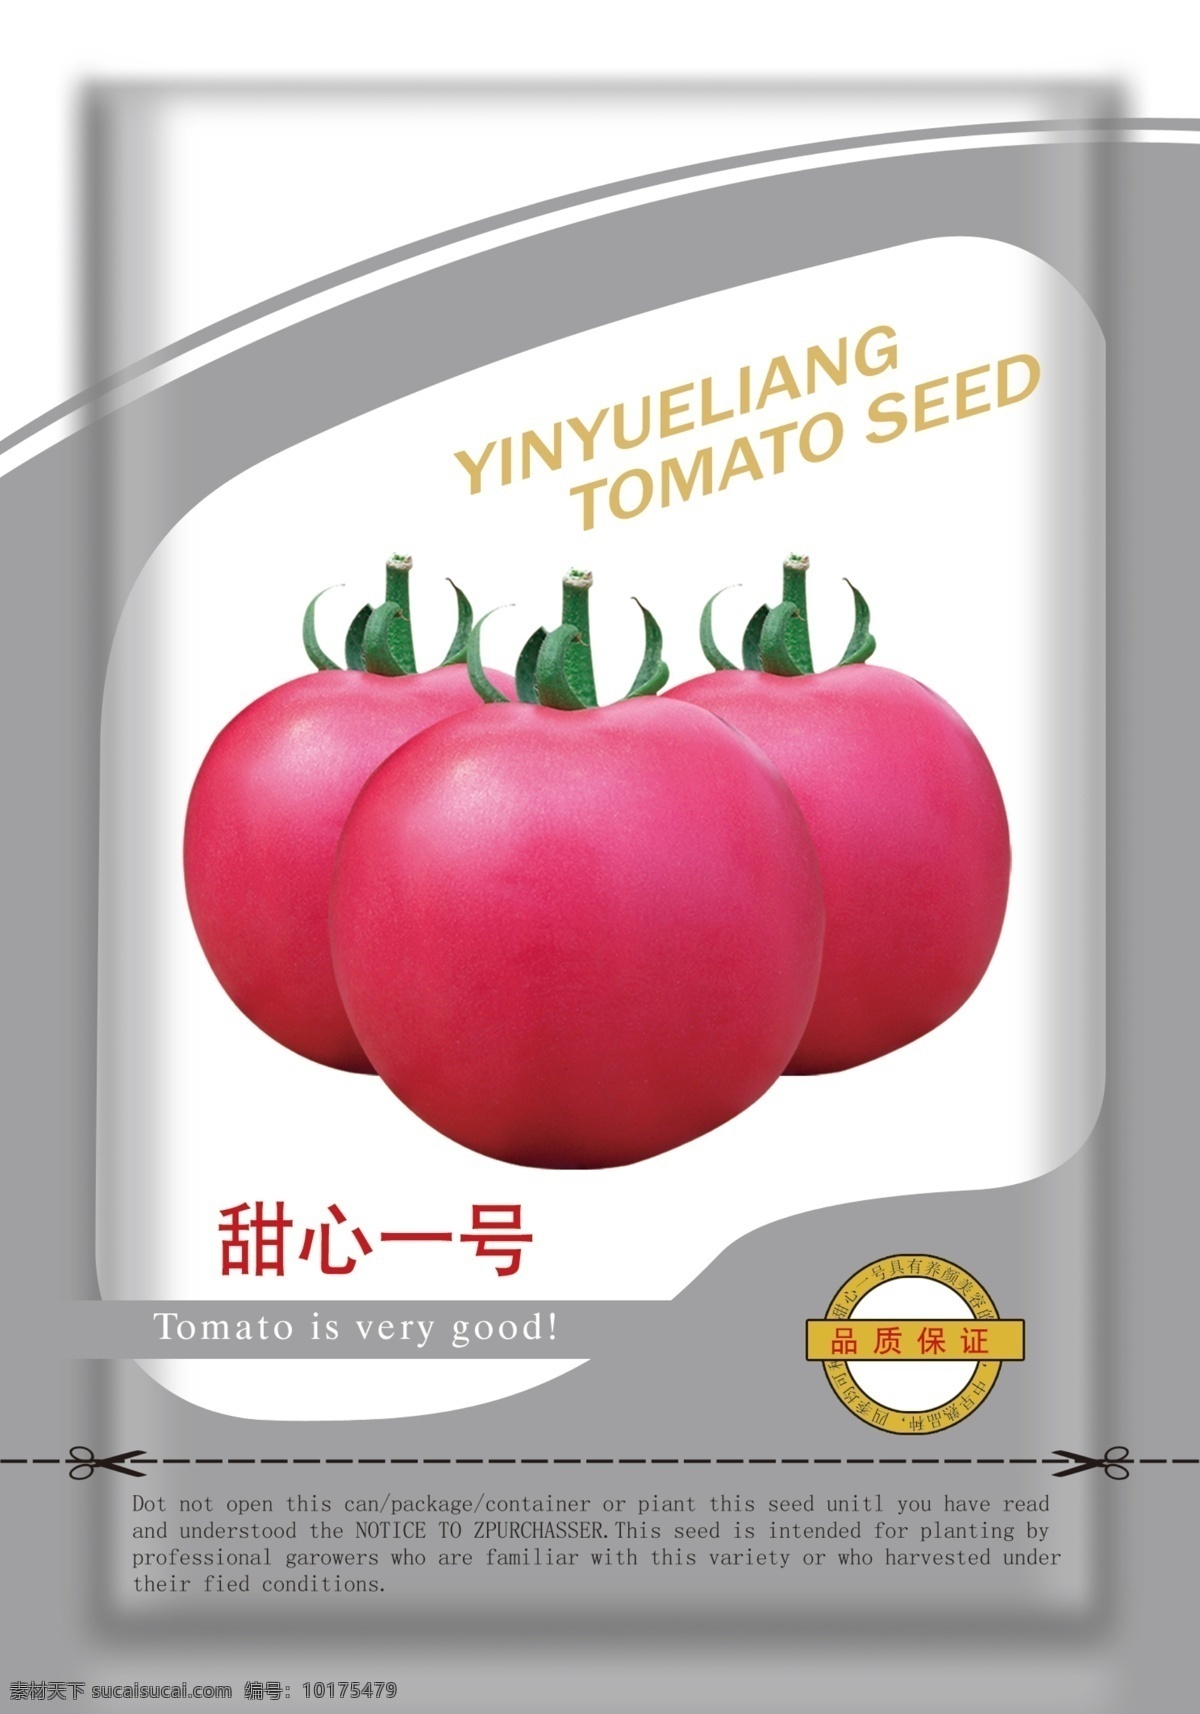 西红柿包装 西红柿 番茄 蔬果包装设计 种子袋 包装设计 广告设计模板 源文件